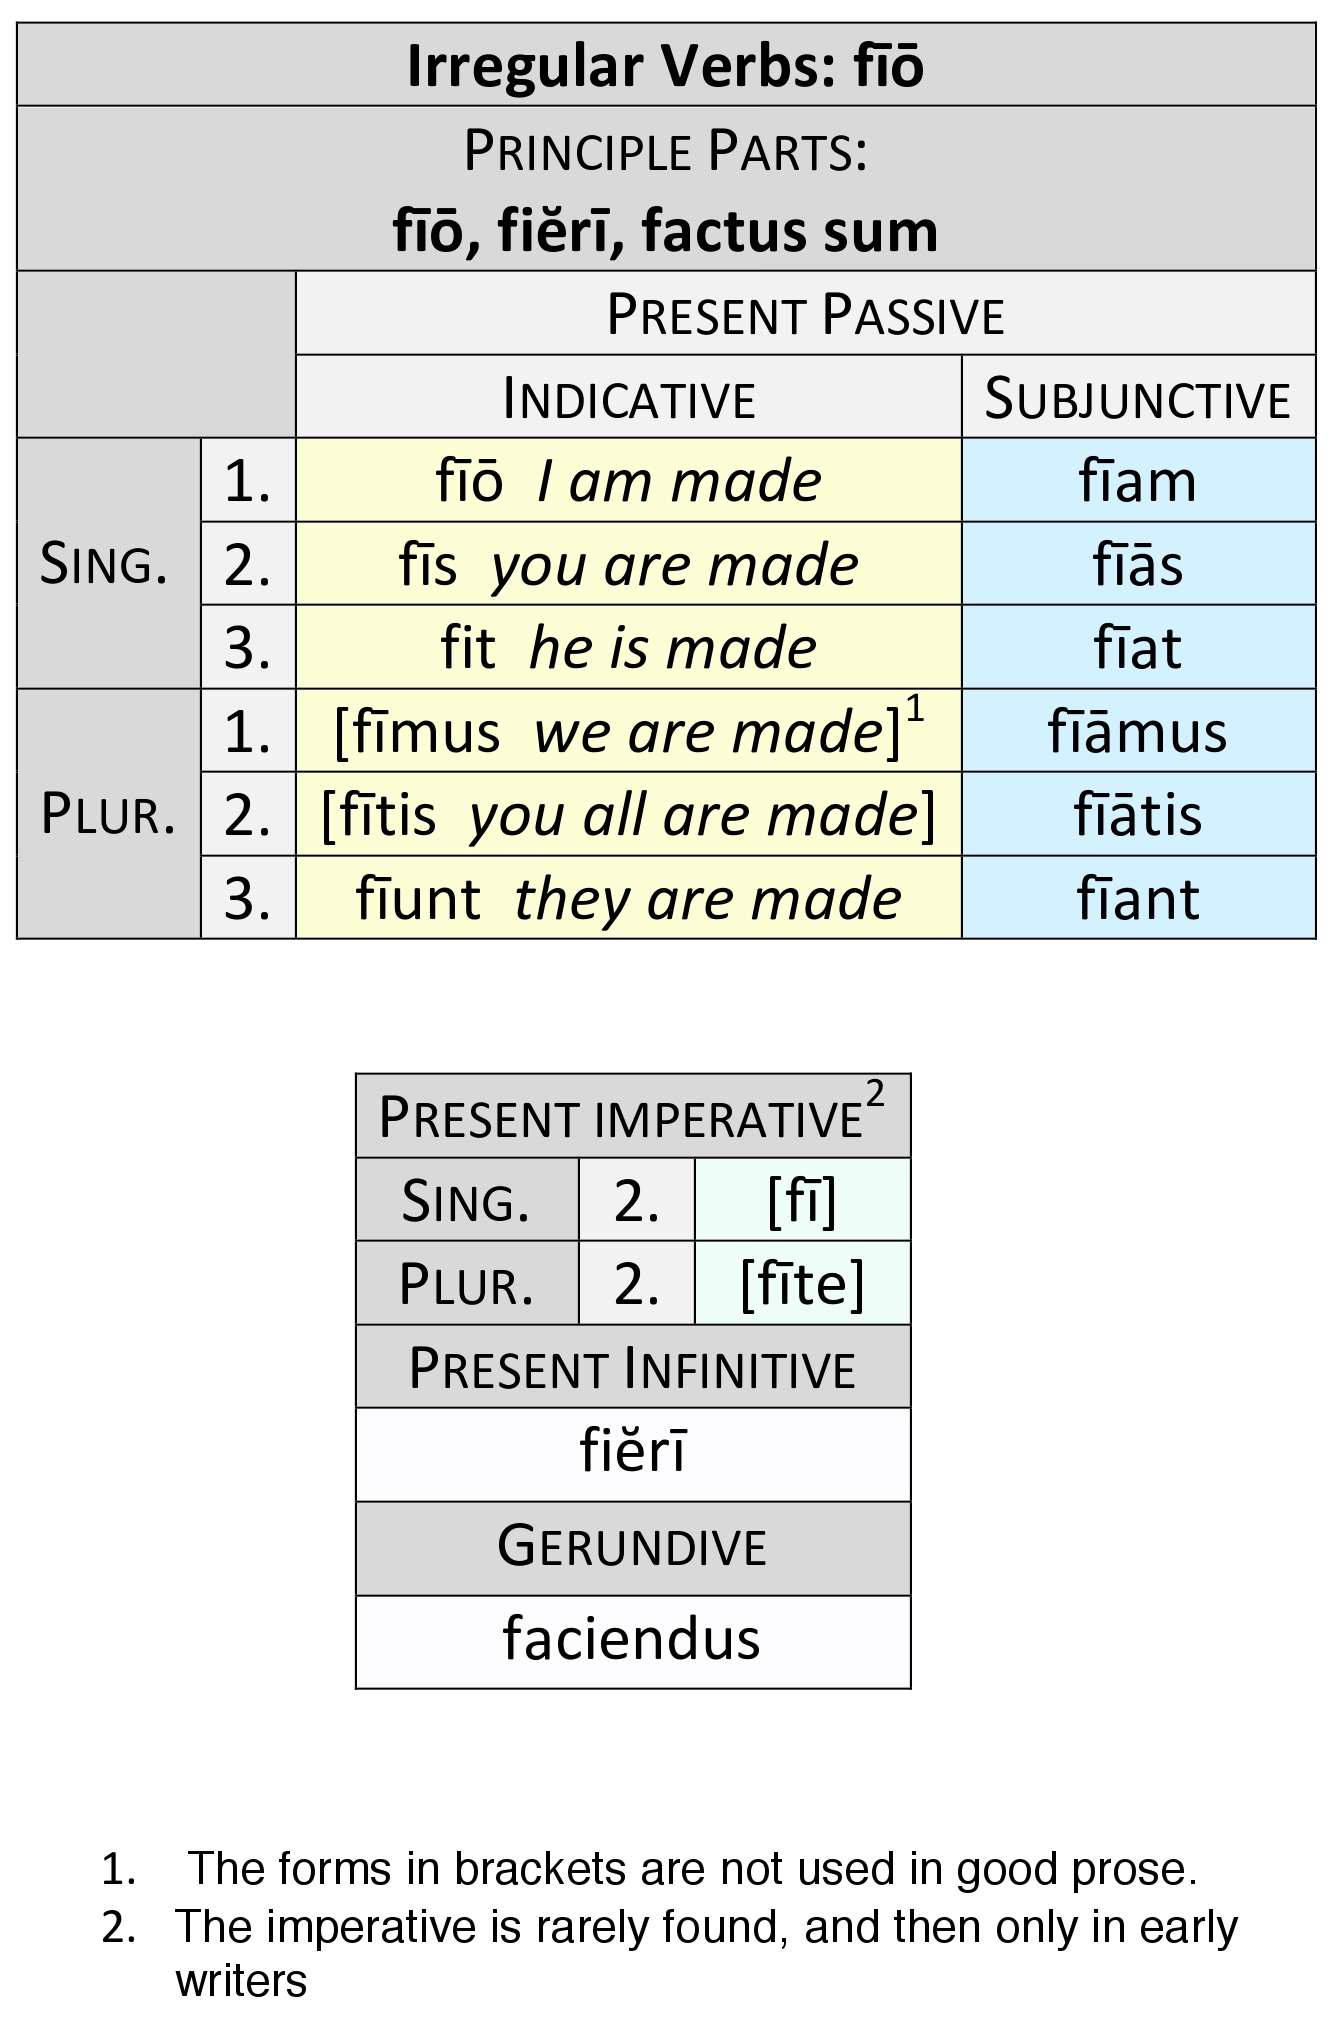 irregular verb fīō present passive paradigm